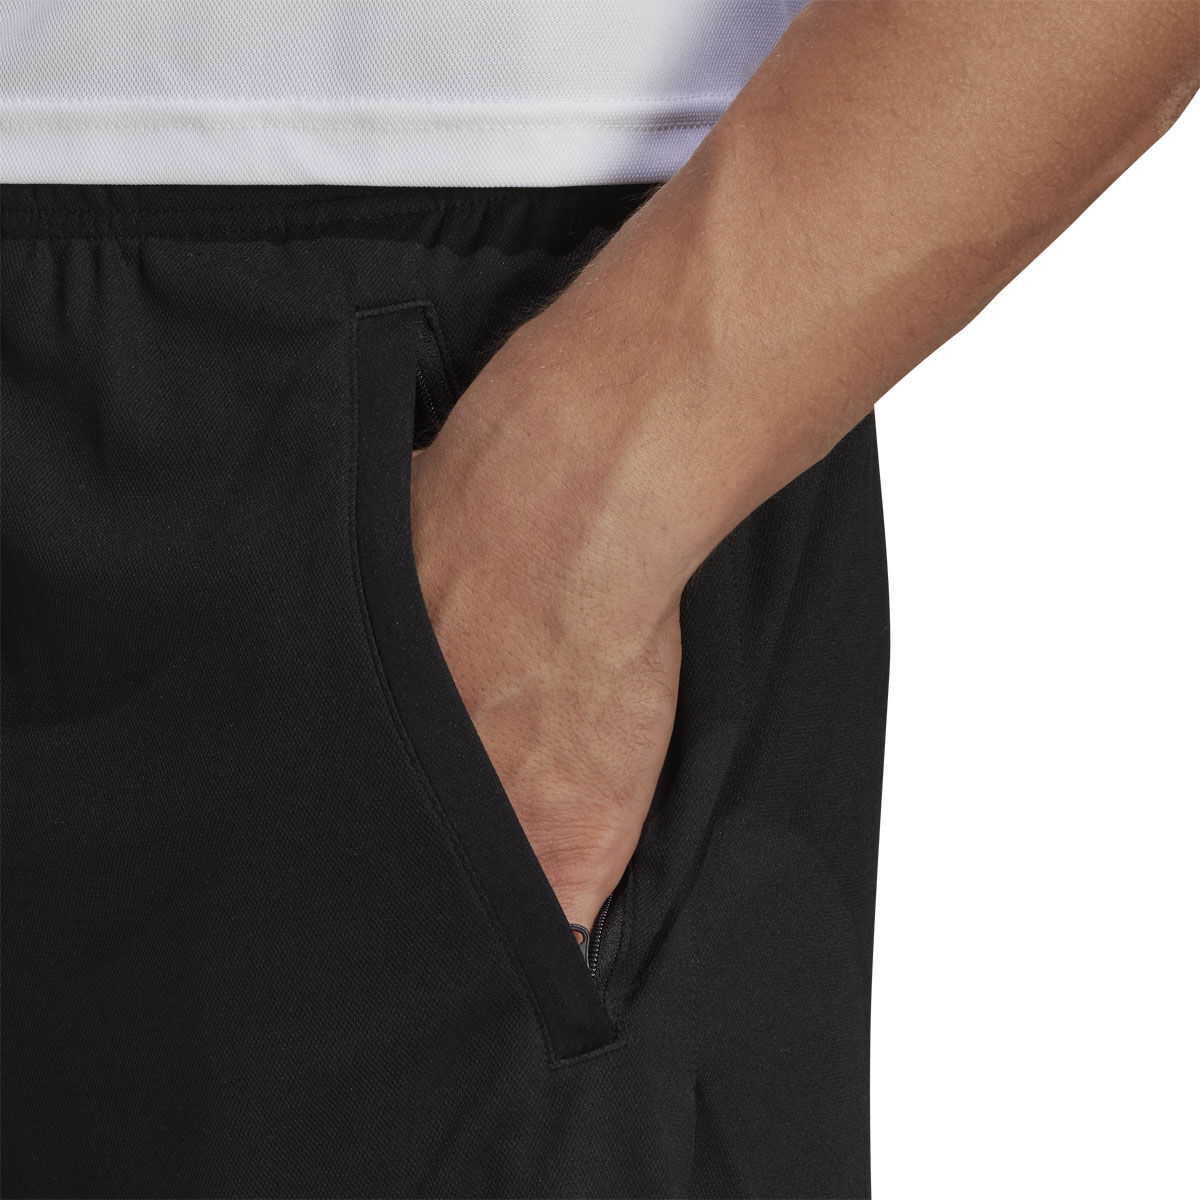 MEN'S SMART ANKLE PANTS (PATTERNED - REGULAR LENGTH 64.5 - 70.5 CM)*